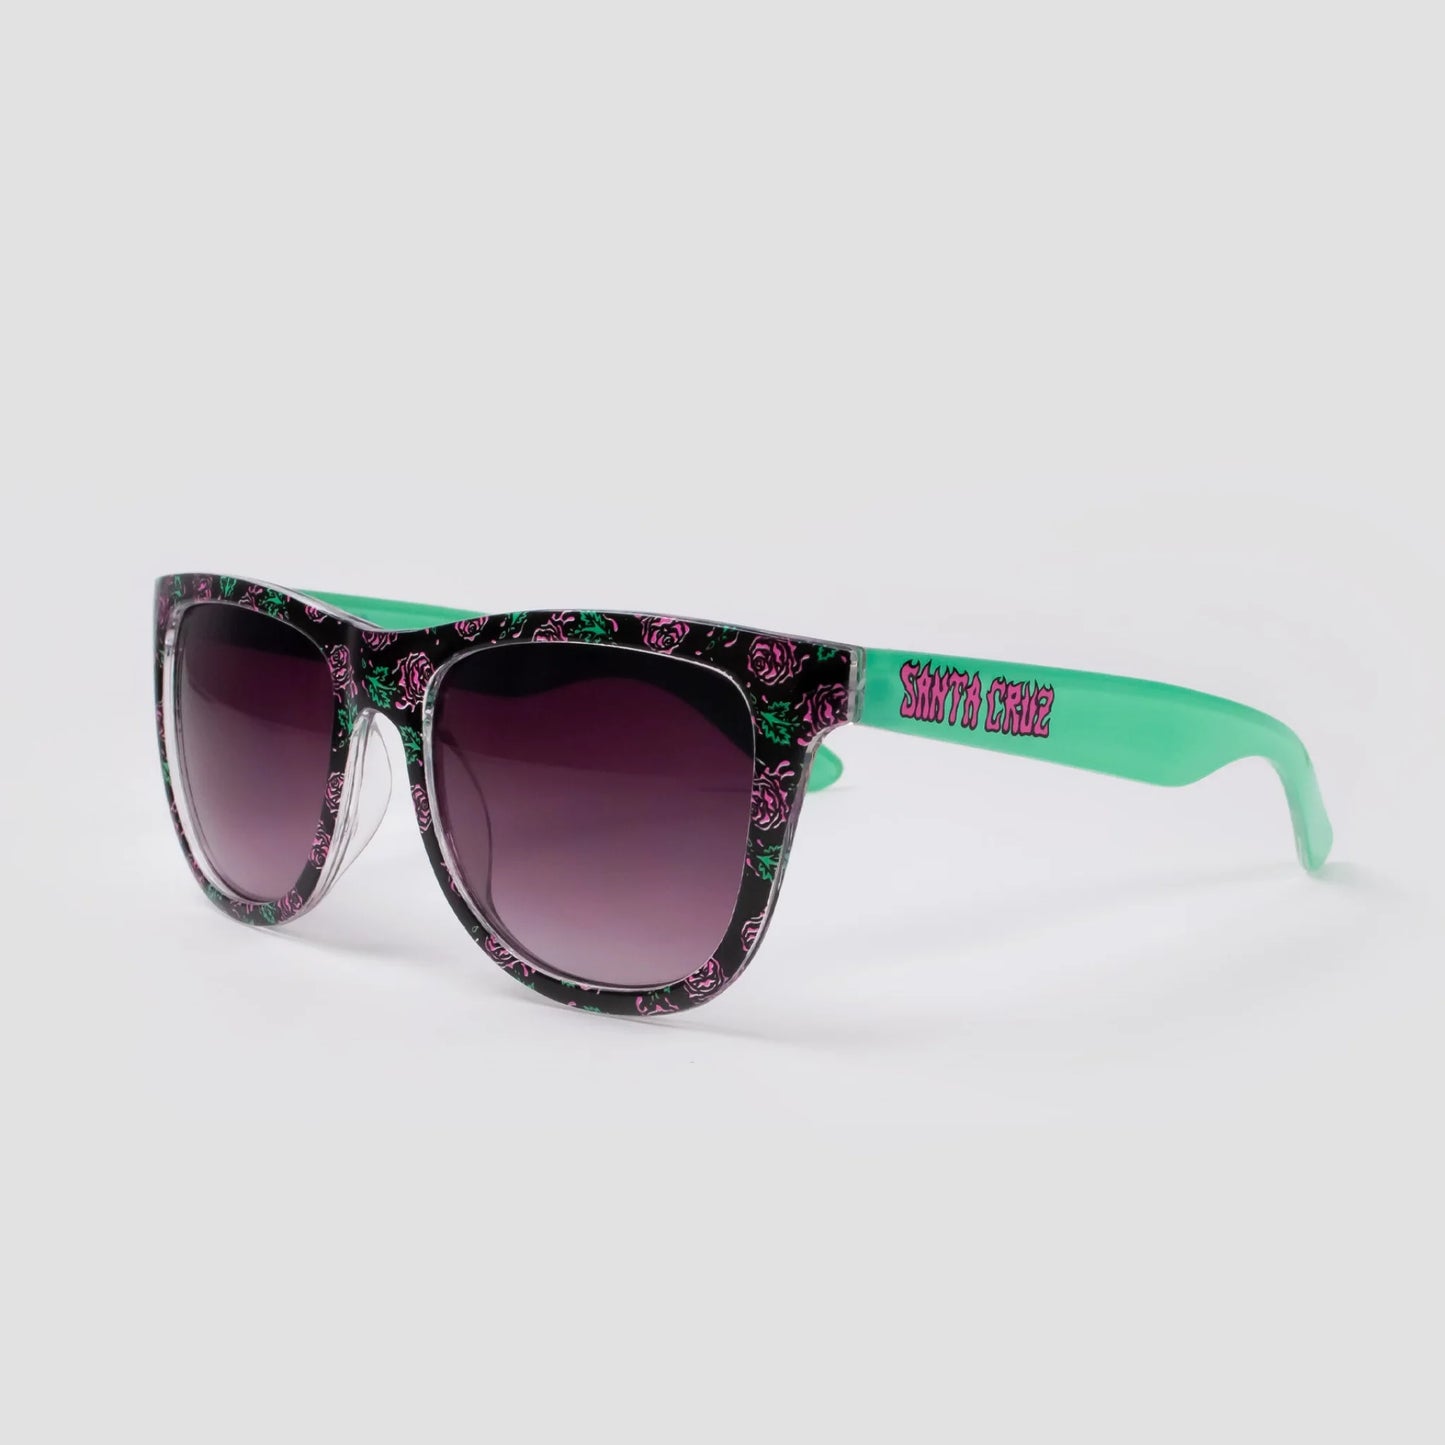 Santa Cruz Dressen Roses Sunglasses - Black/Turquoise - Prime Delux Store